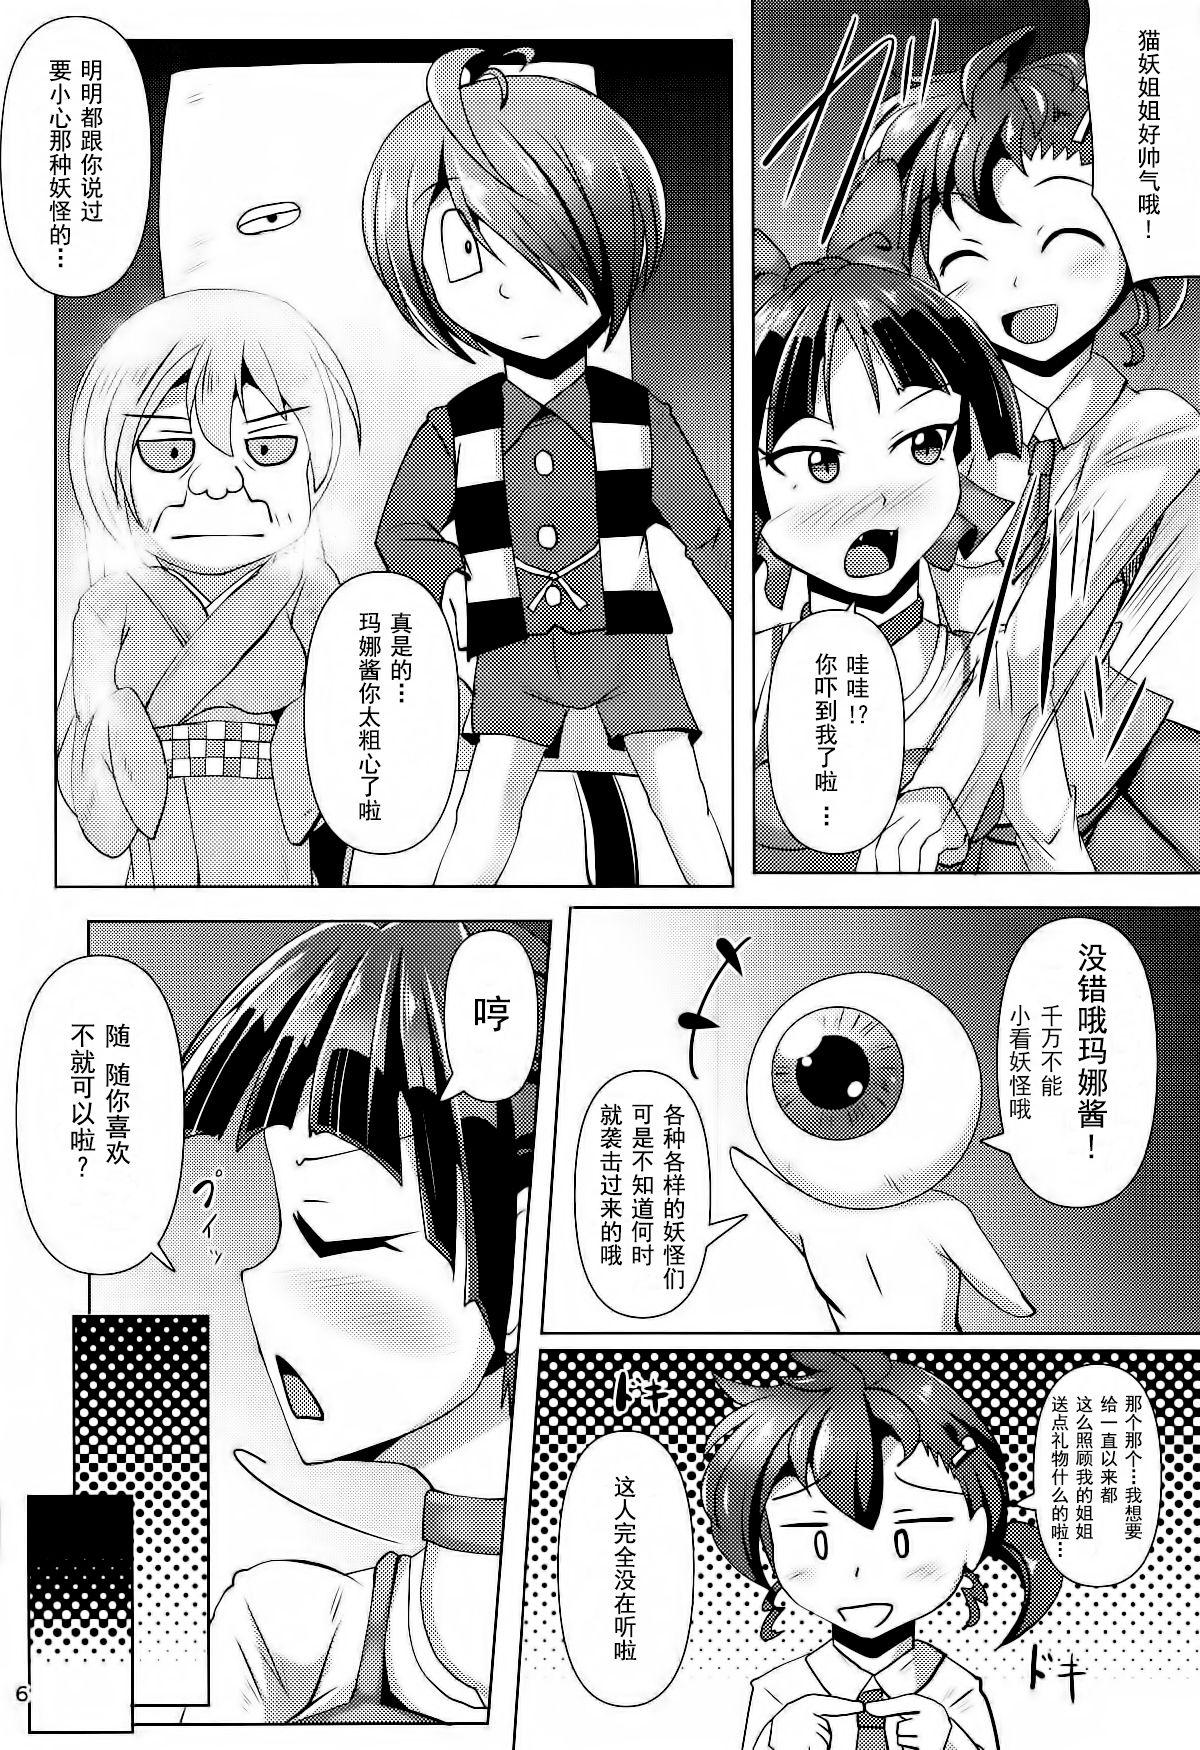 Mommy Kuro Tights no Neko Nee-san to Youkai Ashiname - Gegege no kitarou Cosplay - Page 5